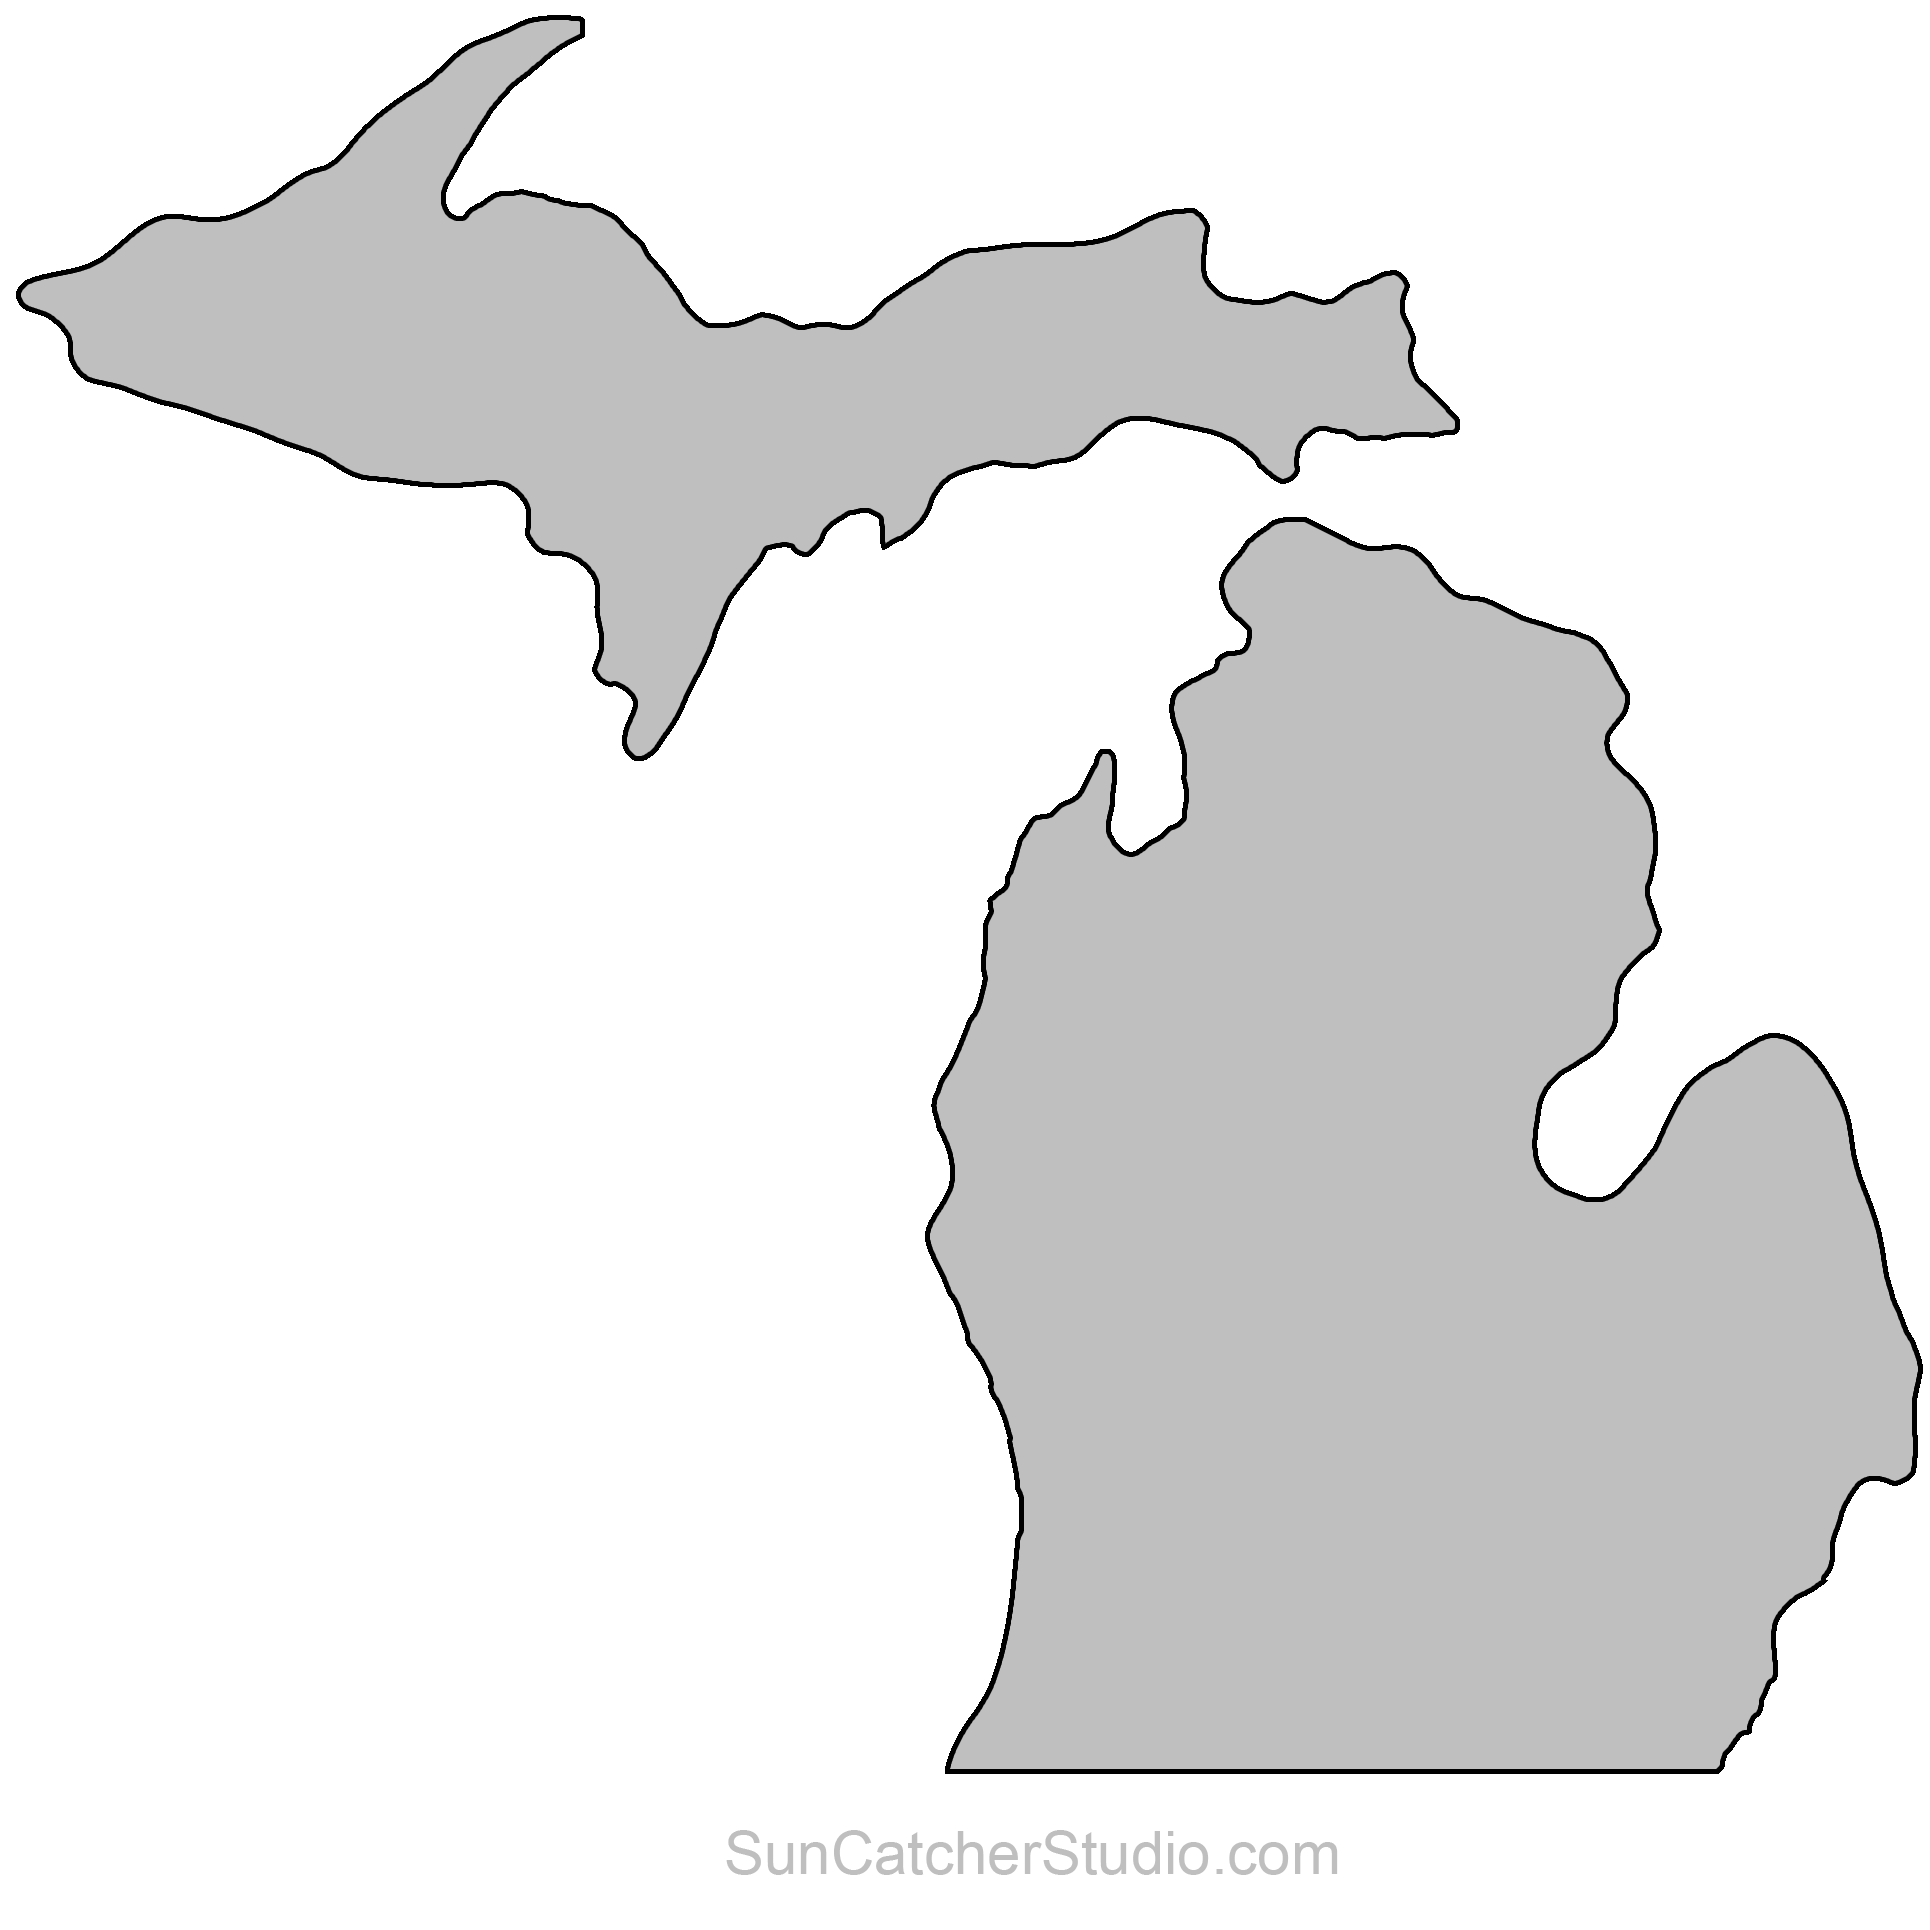 Michigan clipart stencil, Michigan stencil Transparent FREE for